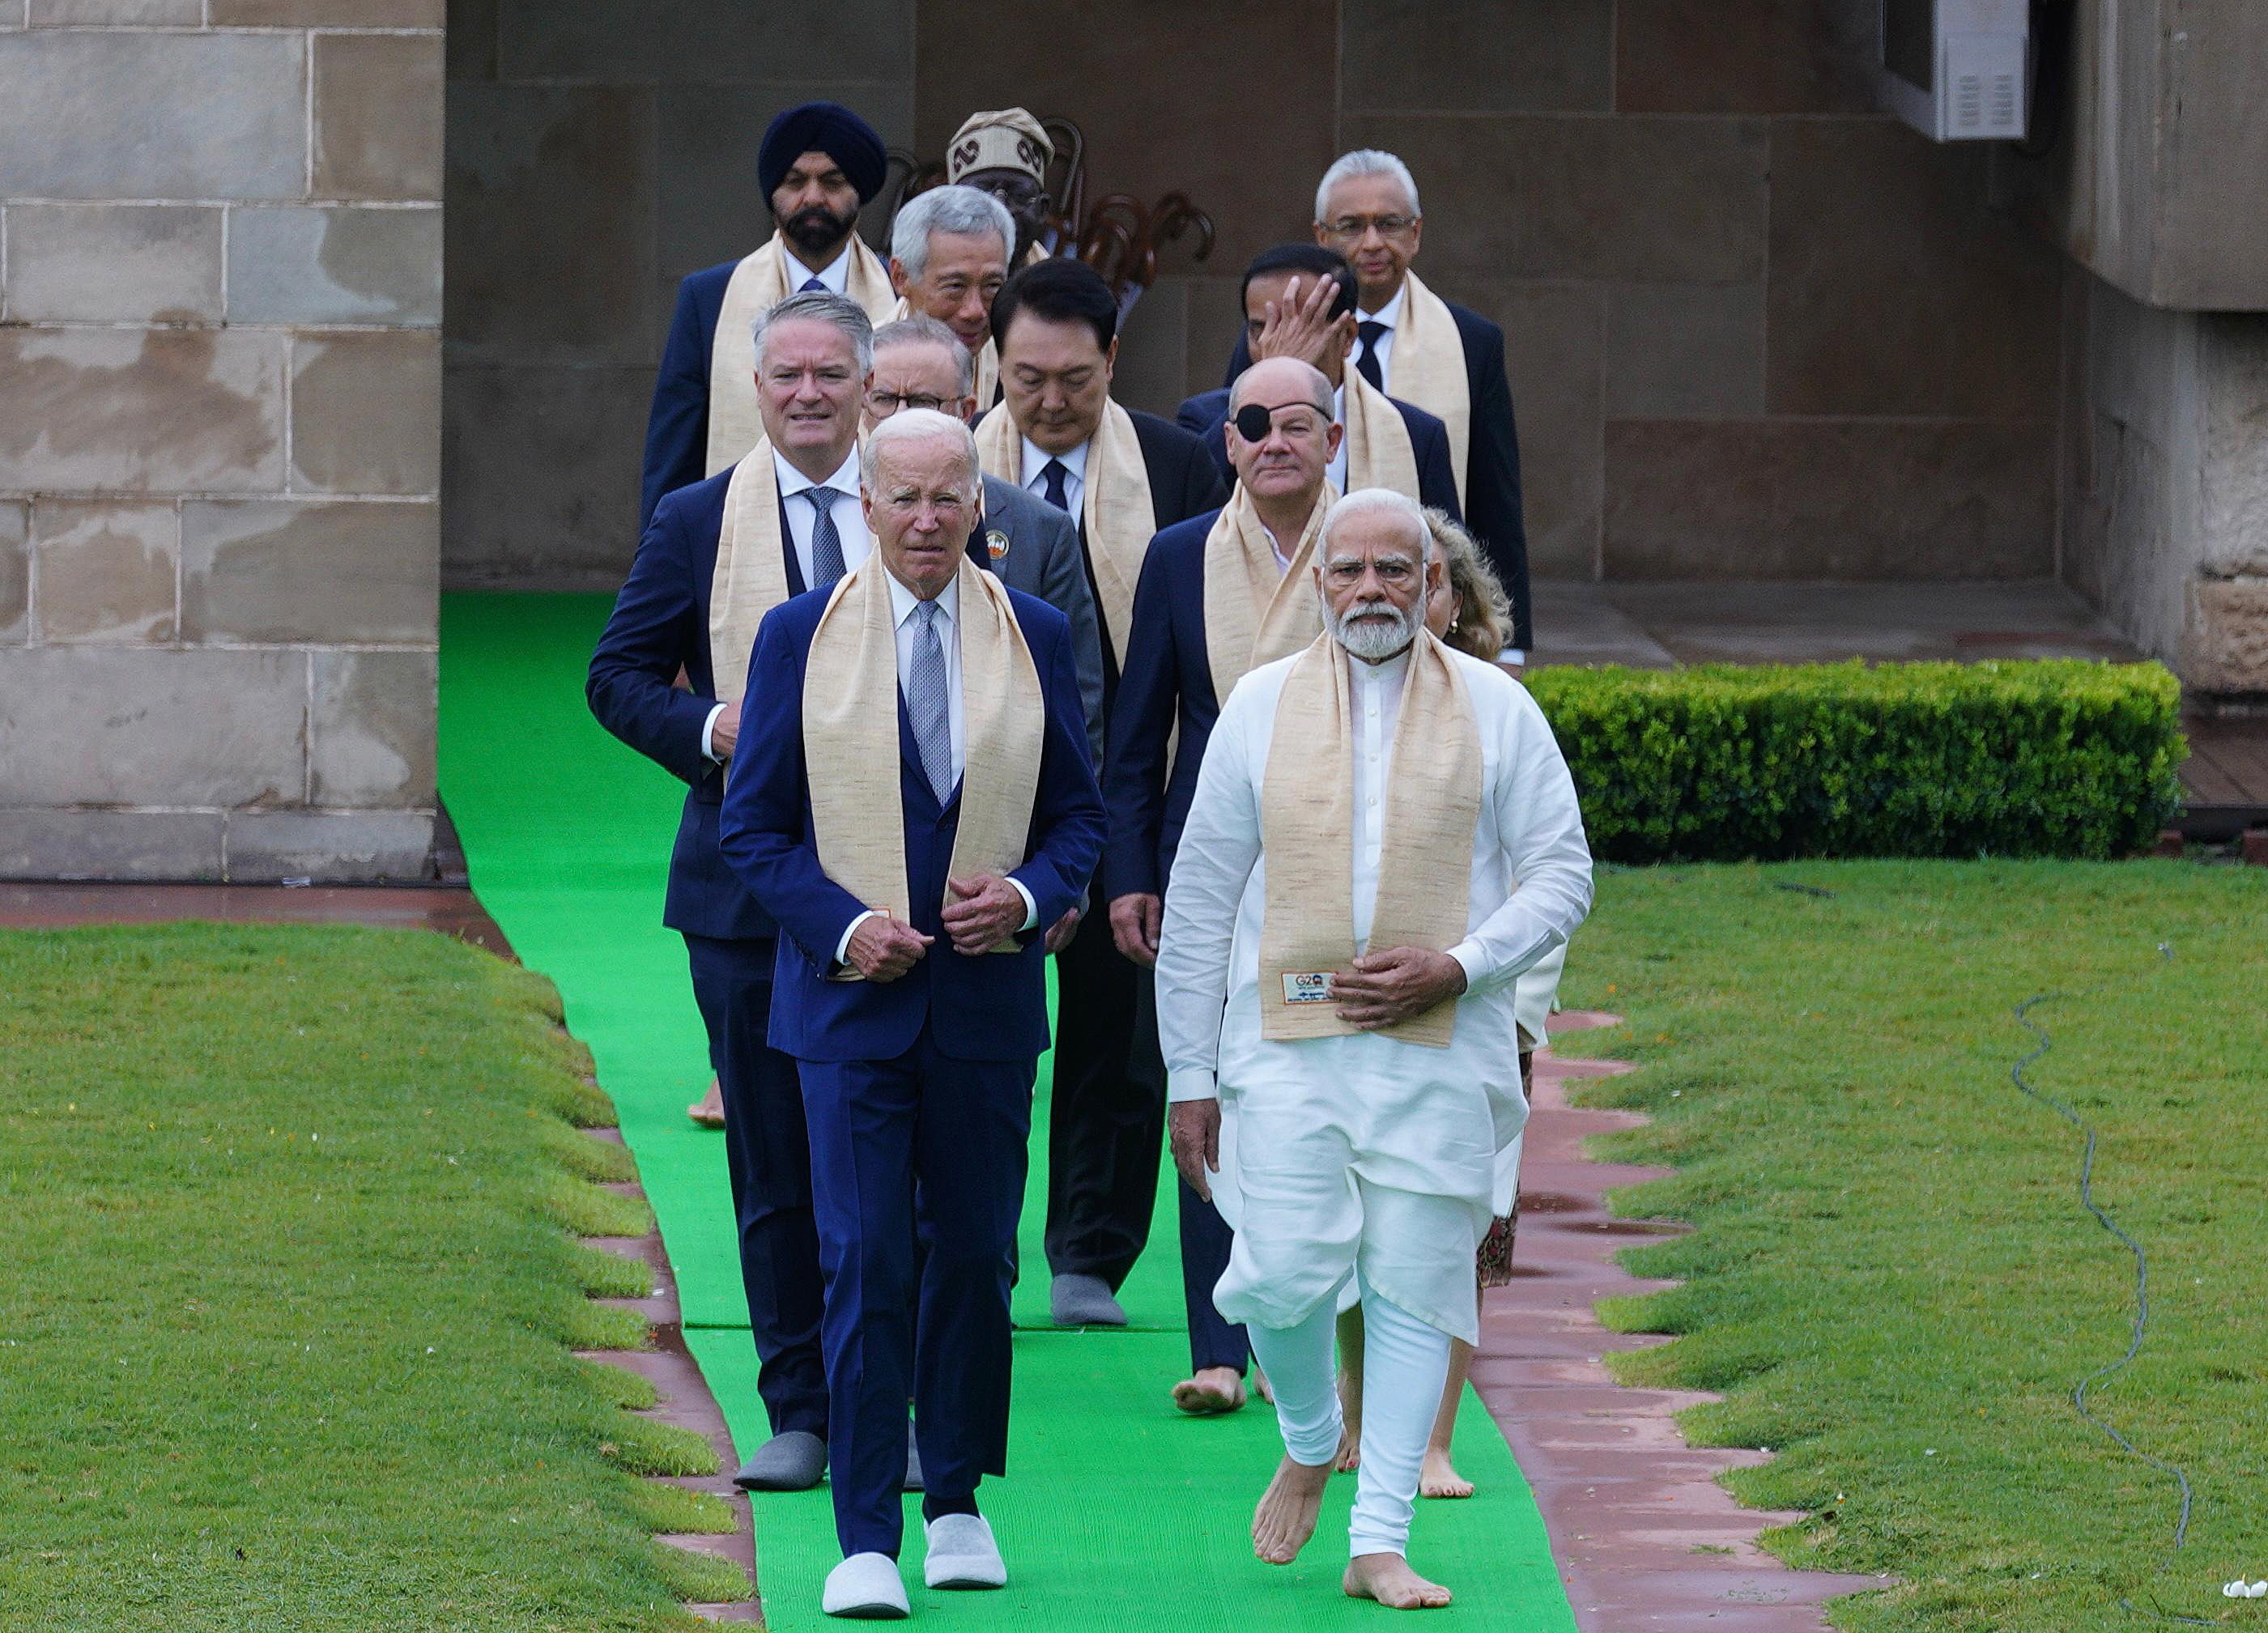 Los lderes del G-20 visitan durante el cierre de la cumbre un memorial dedicado a Mahatma Gandhi.